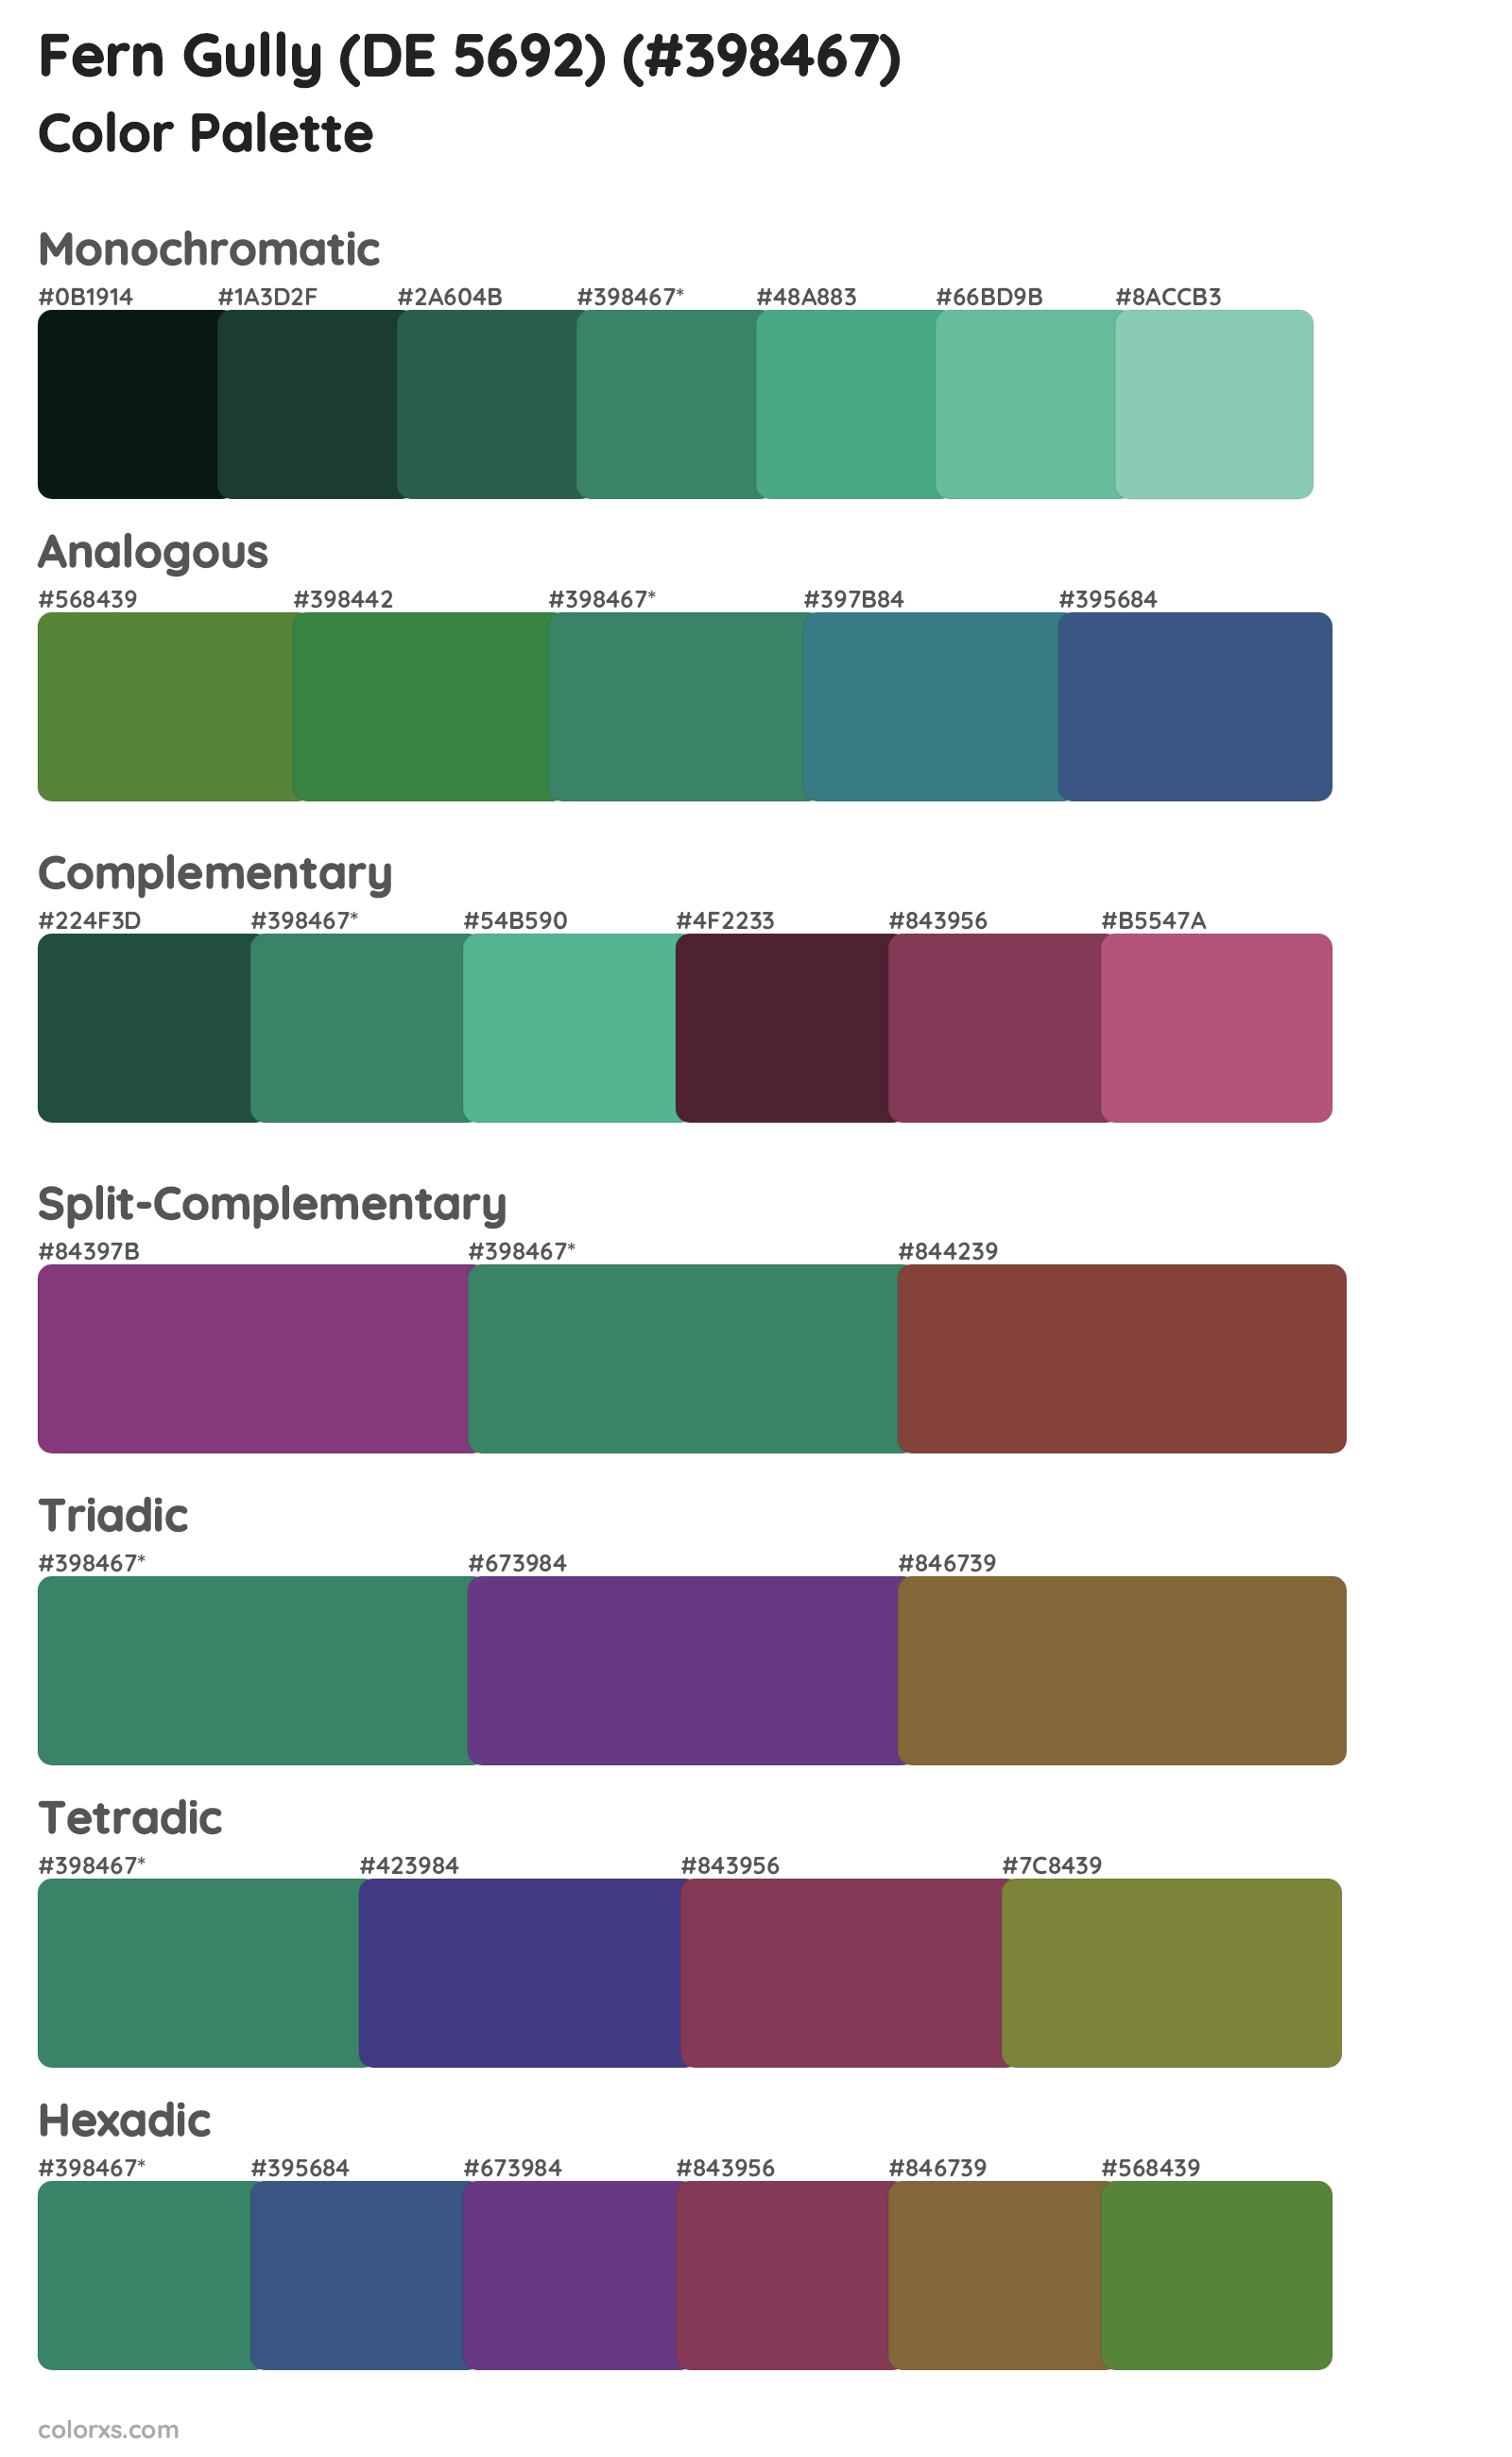 Fern Gully (DE 5692) Color Scheme Palettes